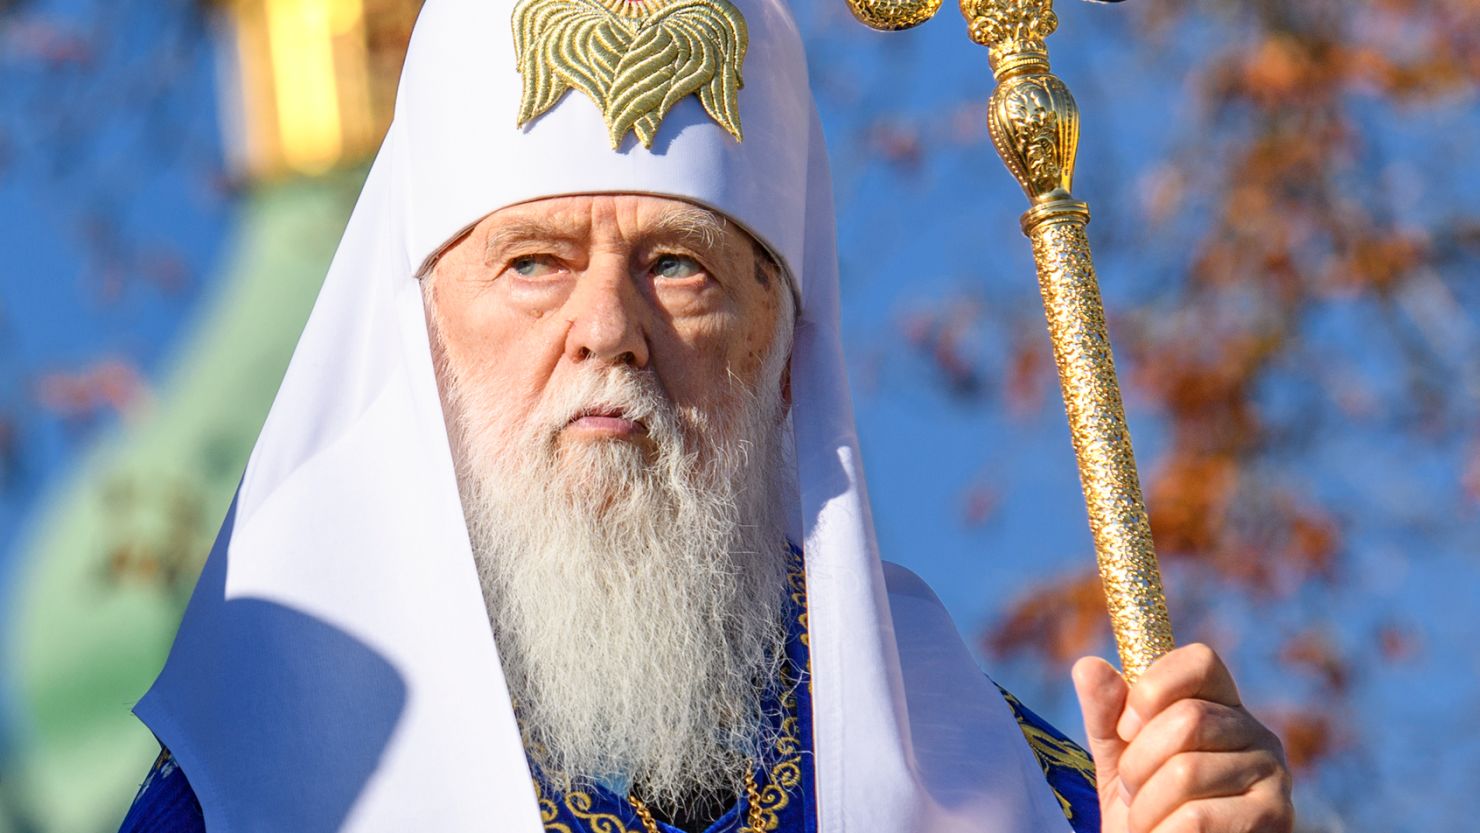 Patriarch Filaret in front of the St. Sophia Cathedral in Kiev in October 2018.